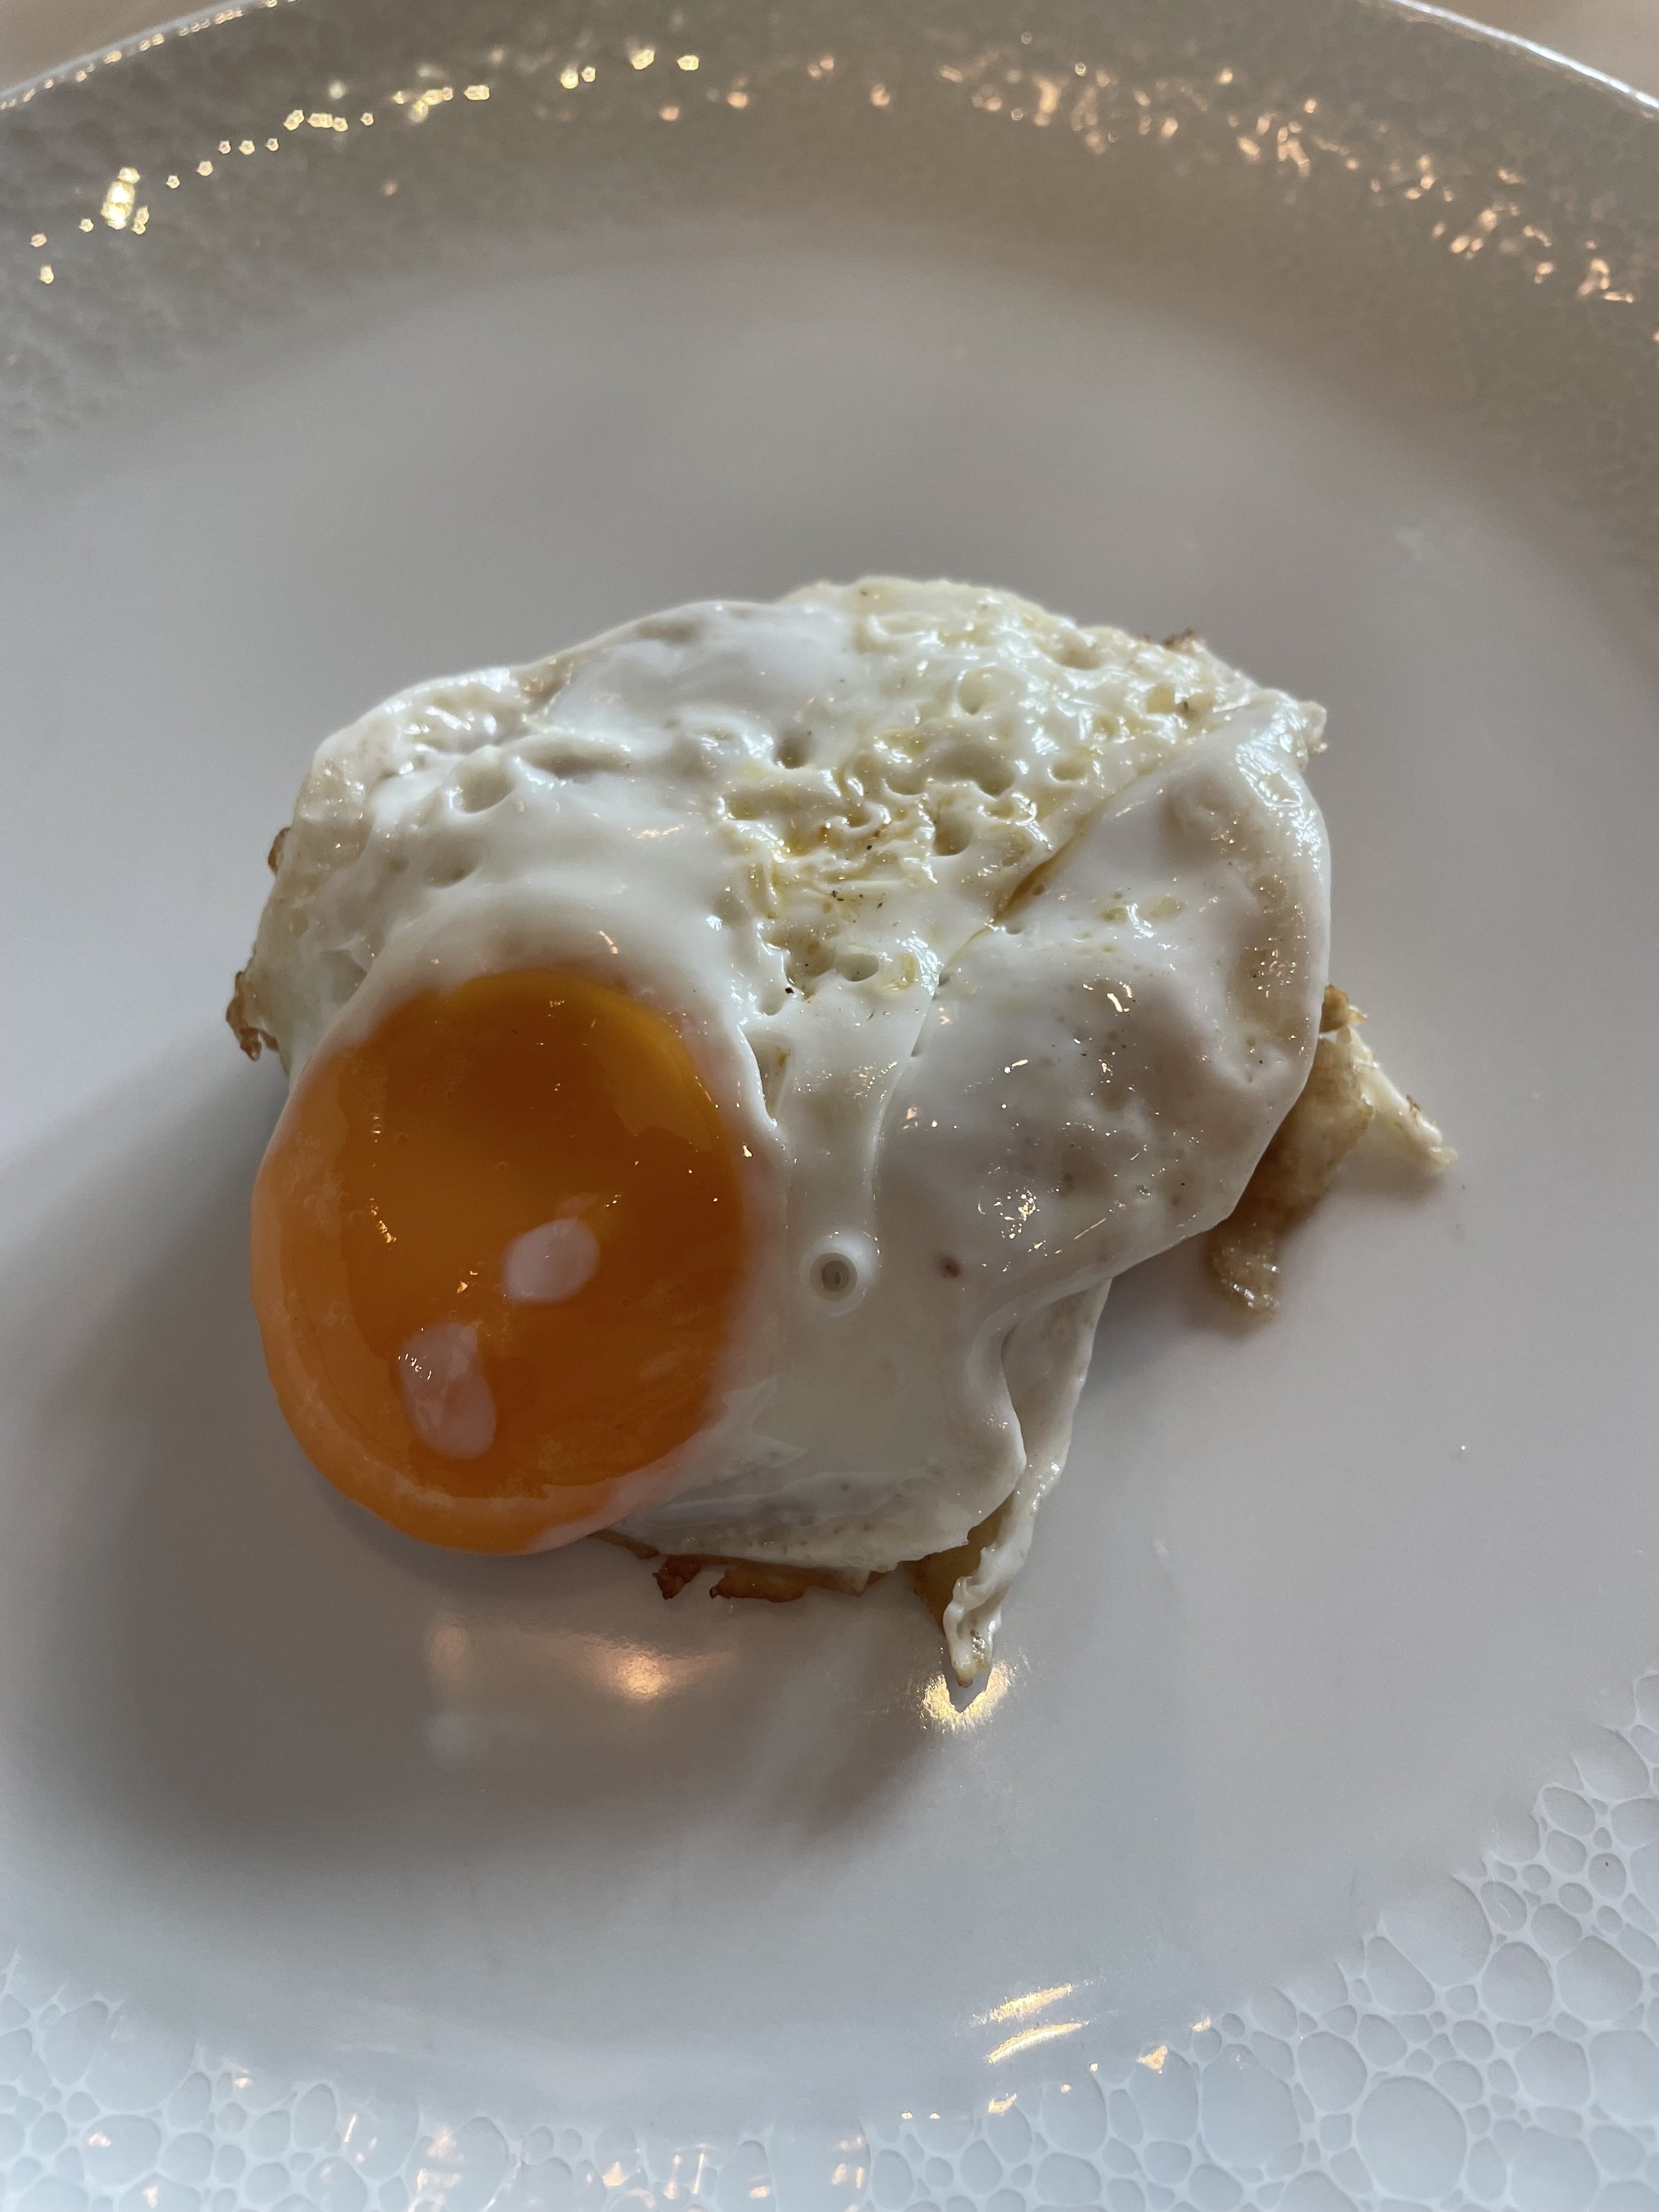 Eggs Benedict (Veranda)